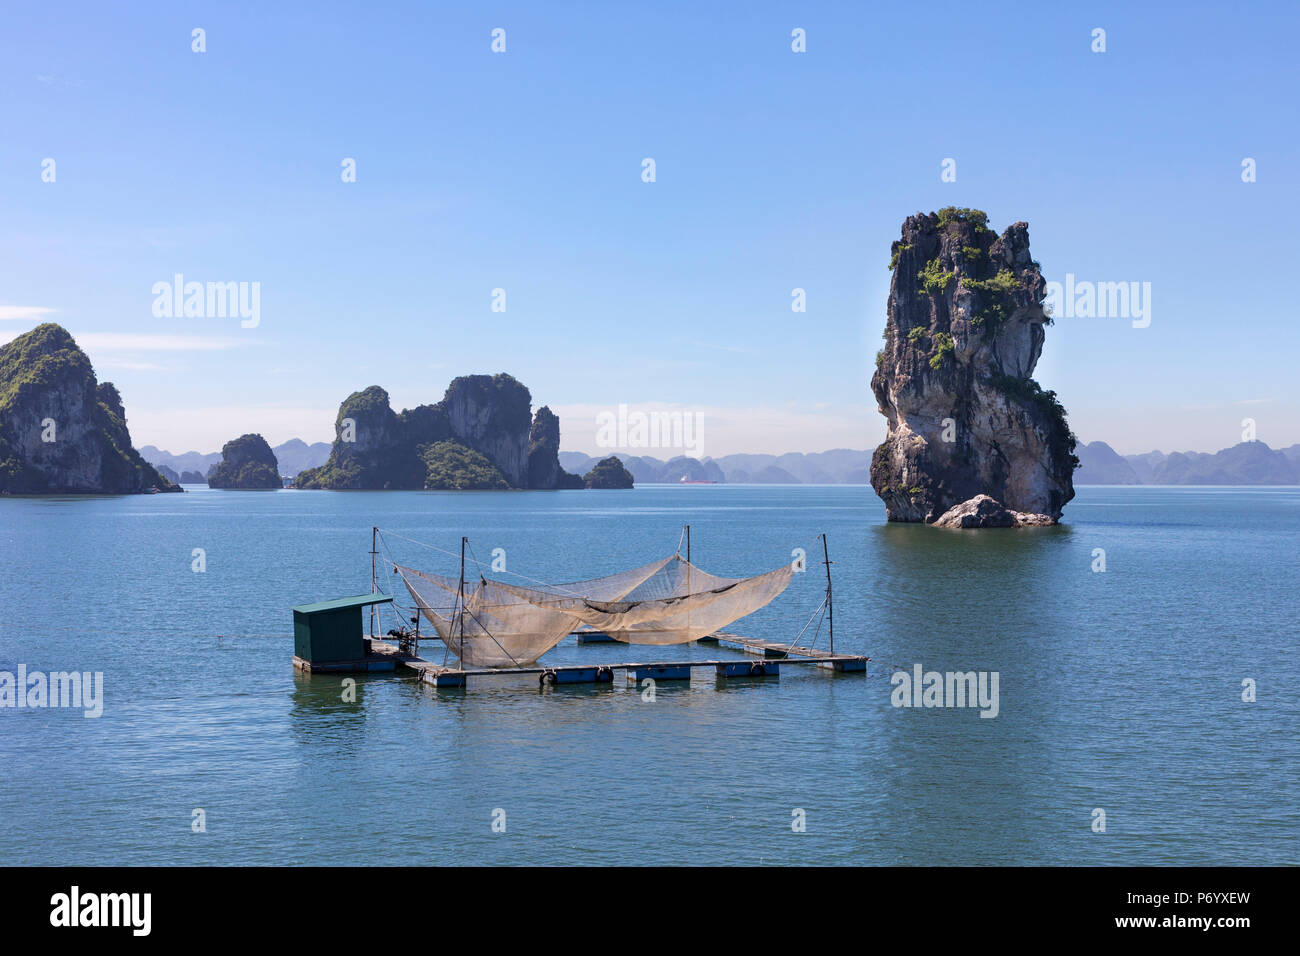 Le reti da pesca su una zattera di fronte della roccia carsica, Halong Bay, Quang Ninh provincia nordorientale, Vietnam, sud-est asiatico Foto Stock